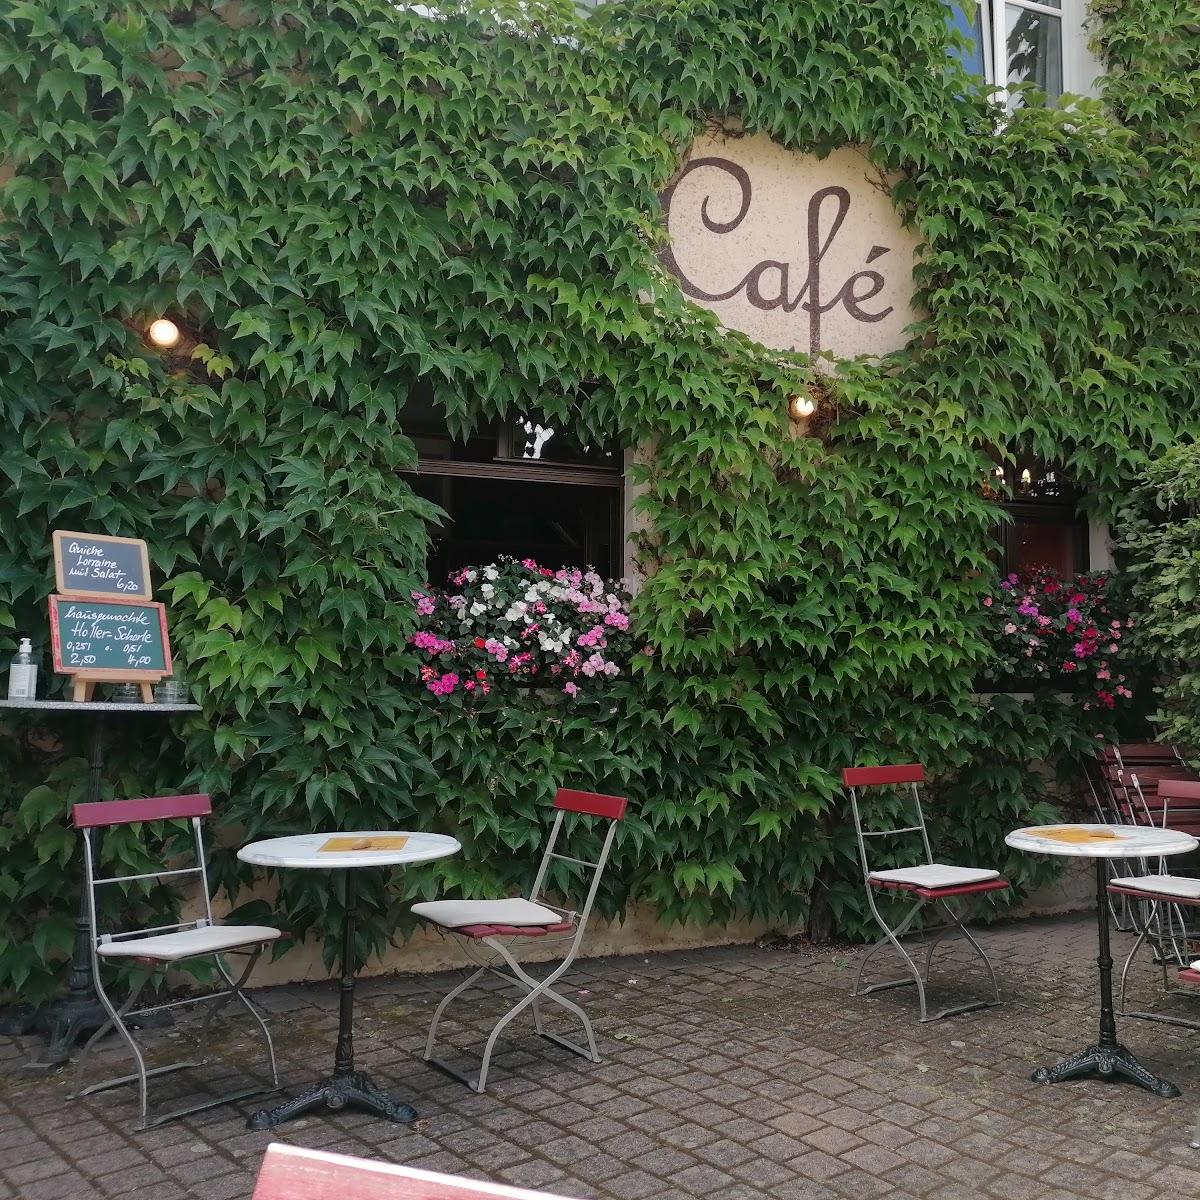 Restaurant "Café Kulturey" in Wachenheim an der Weinstraße